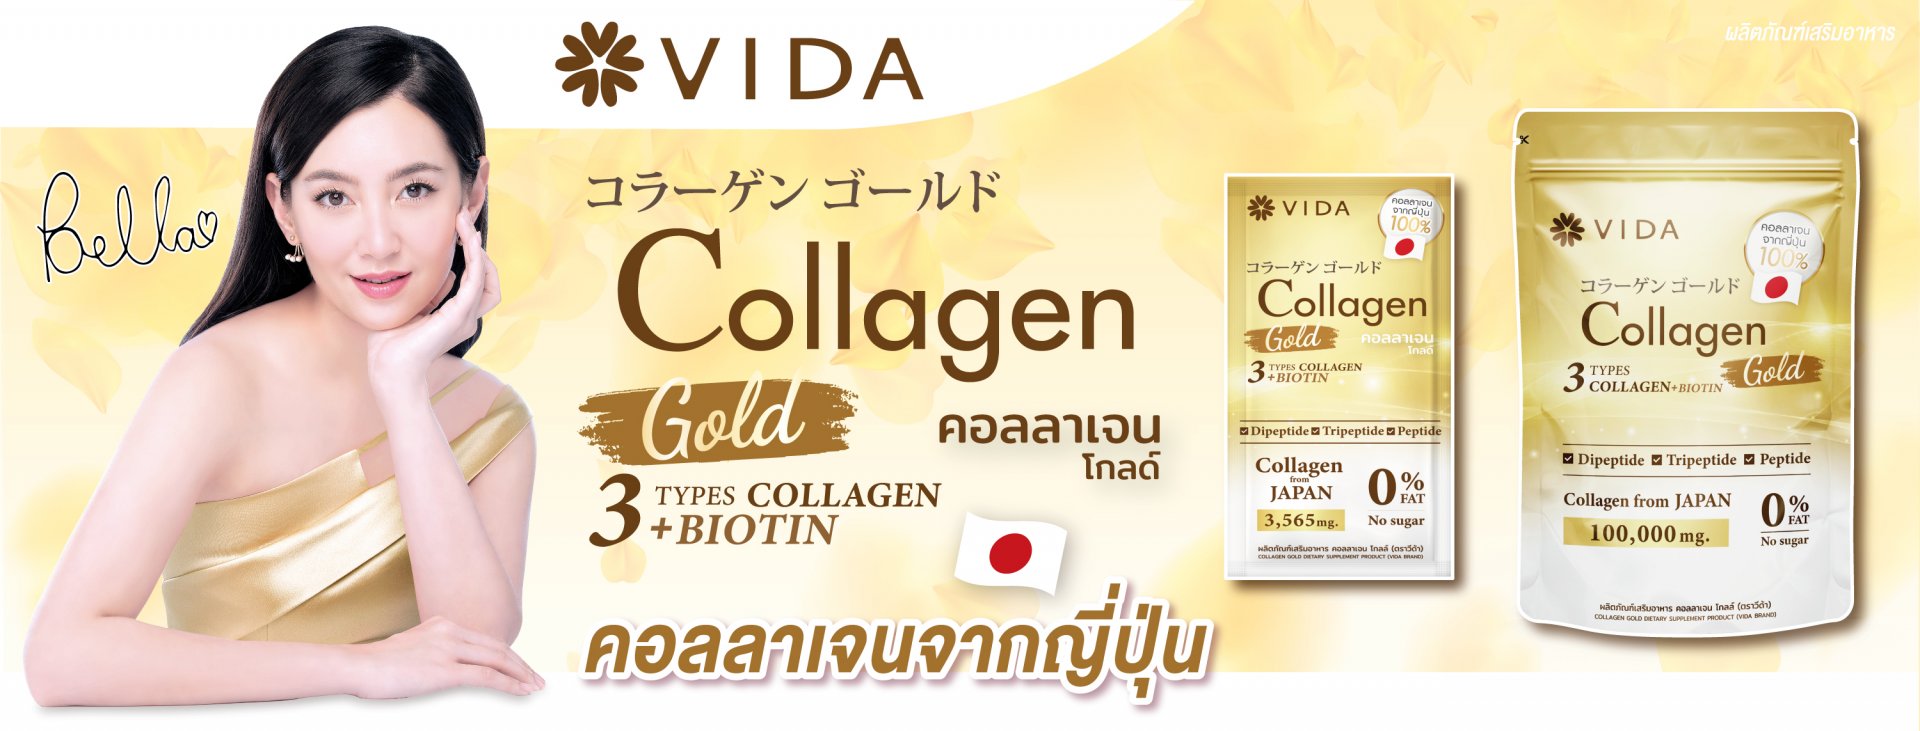 วีด้า เบลล่า ราณี VIDA Collagen ผิวขาว สวย กระจ่างใส ลดสิว ลดจุดด่างดำ คอลลาเจน บำรุงผิว บำรุงกระดูก ไขข้อ ข้อต่อ ผิวนุ่ม ชุ่มชื้น